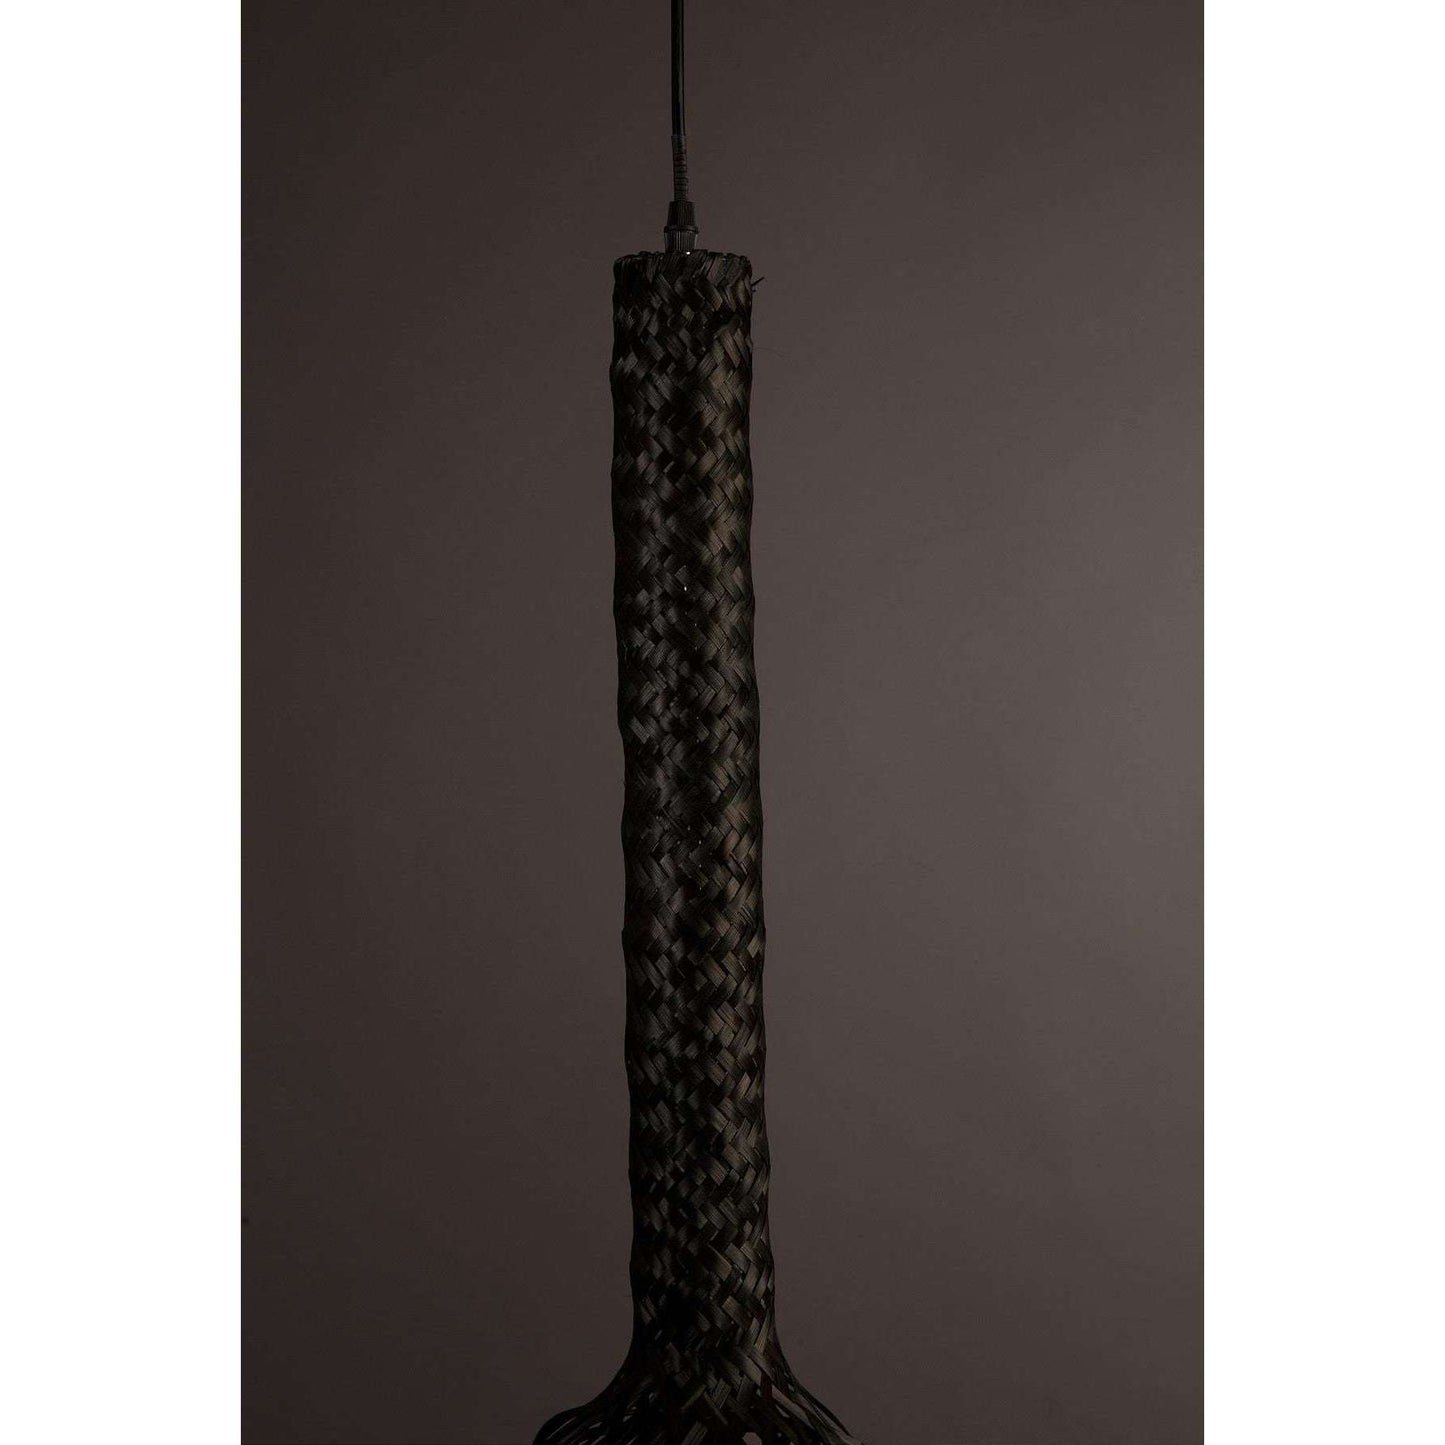 Dutchbone hanglamp boo zwart Ø22,5 x 155 cm